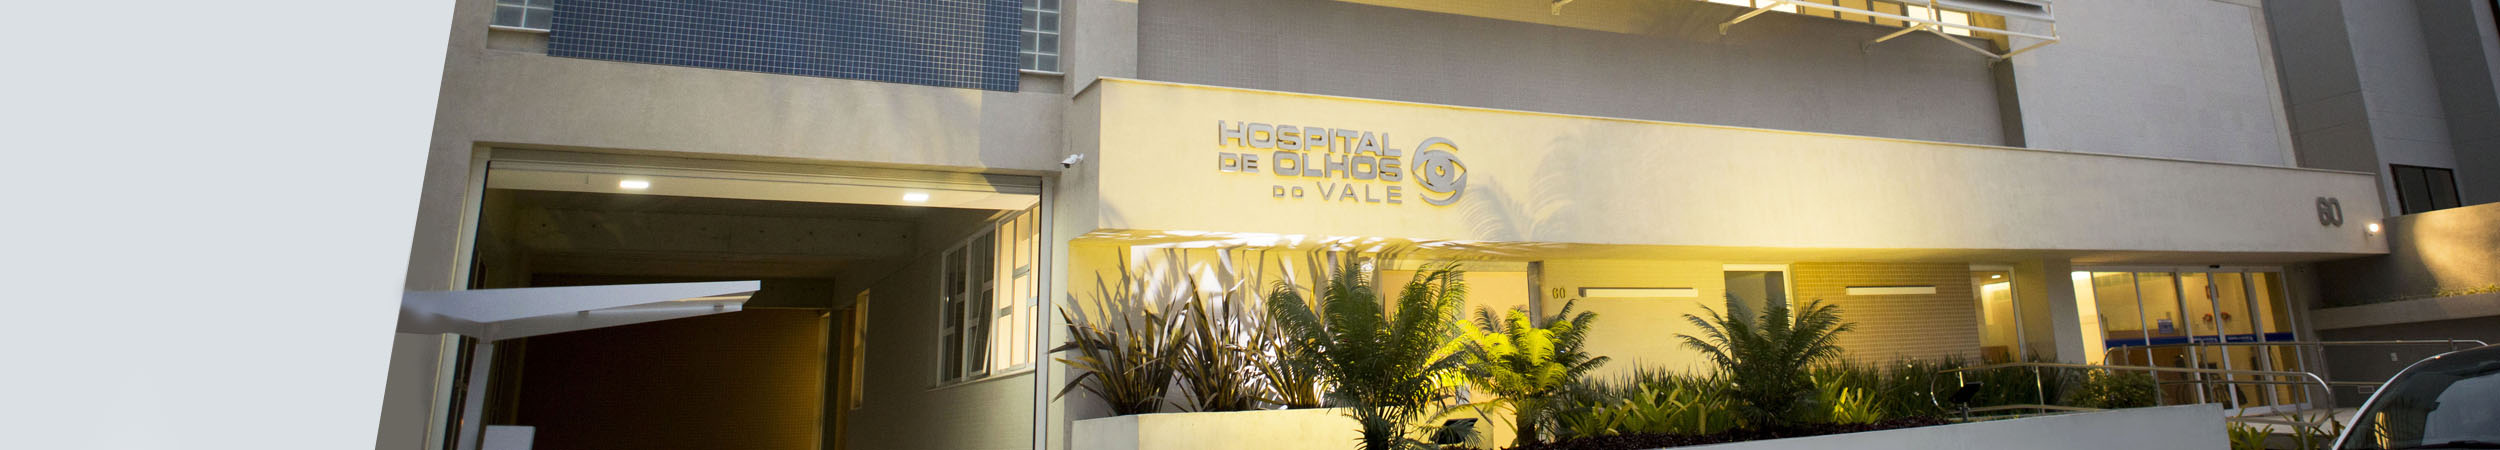 Hospital de Olhos do Vale | São José dos Campos